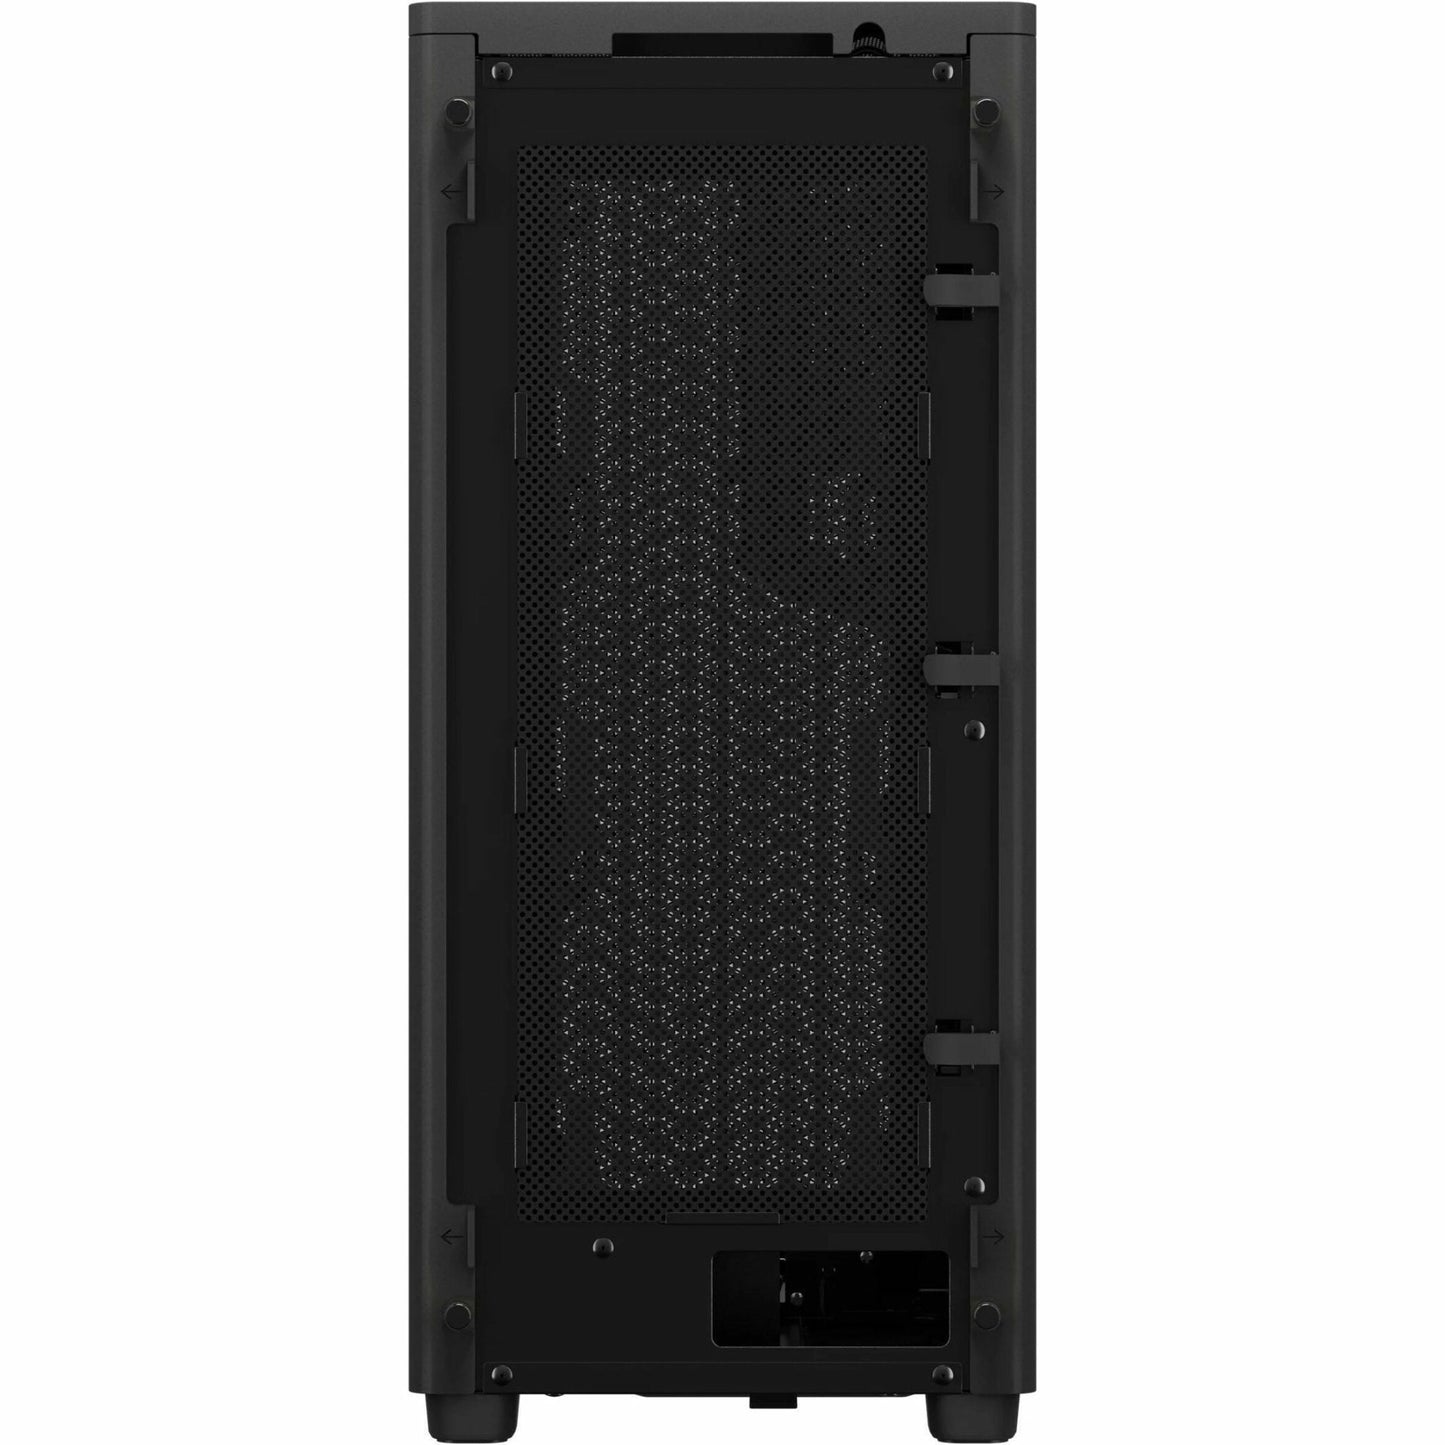 Corsair 2000D AIRFLOW Mini-ITX PC Case - Black